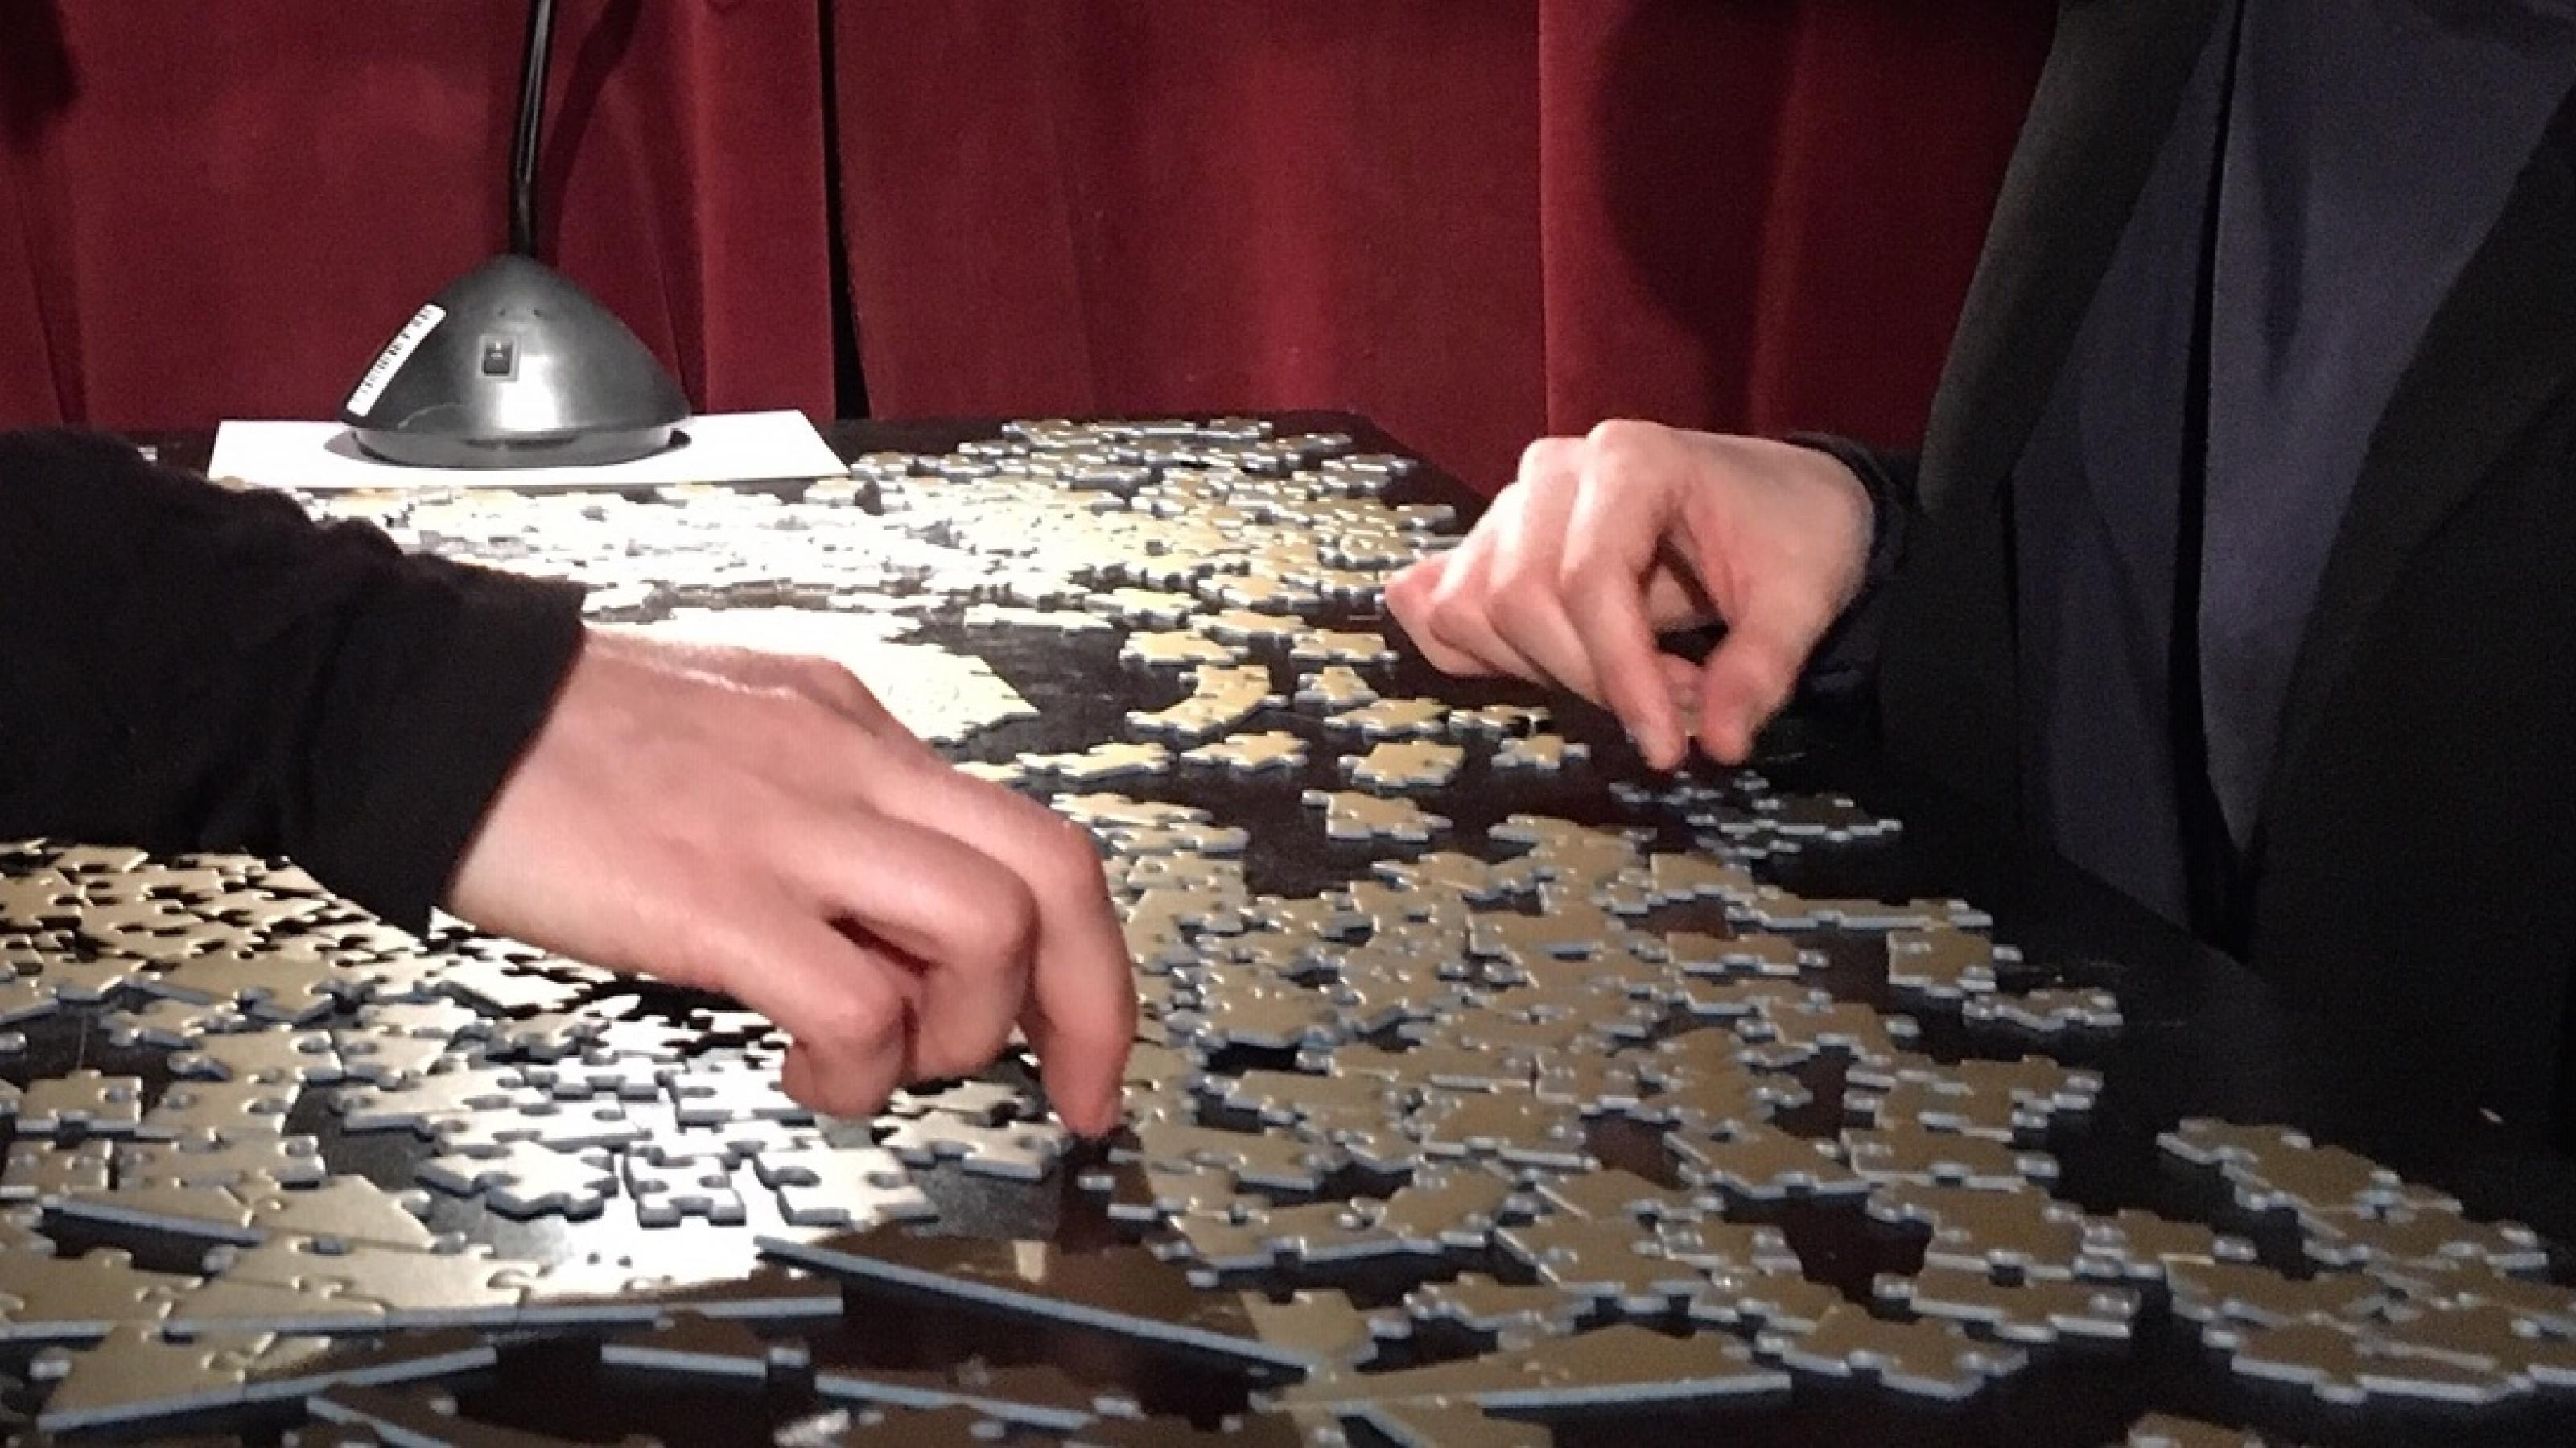 Zwei Menschen sitzen sich gegenüber und puzzlen gemeinsam. Man sieht nur ihre Hände. Die einfarbig goldenen Puzzleteile unterscheiden sich nur durch ihre Form.